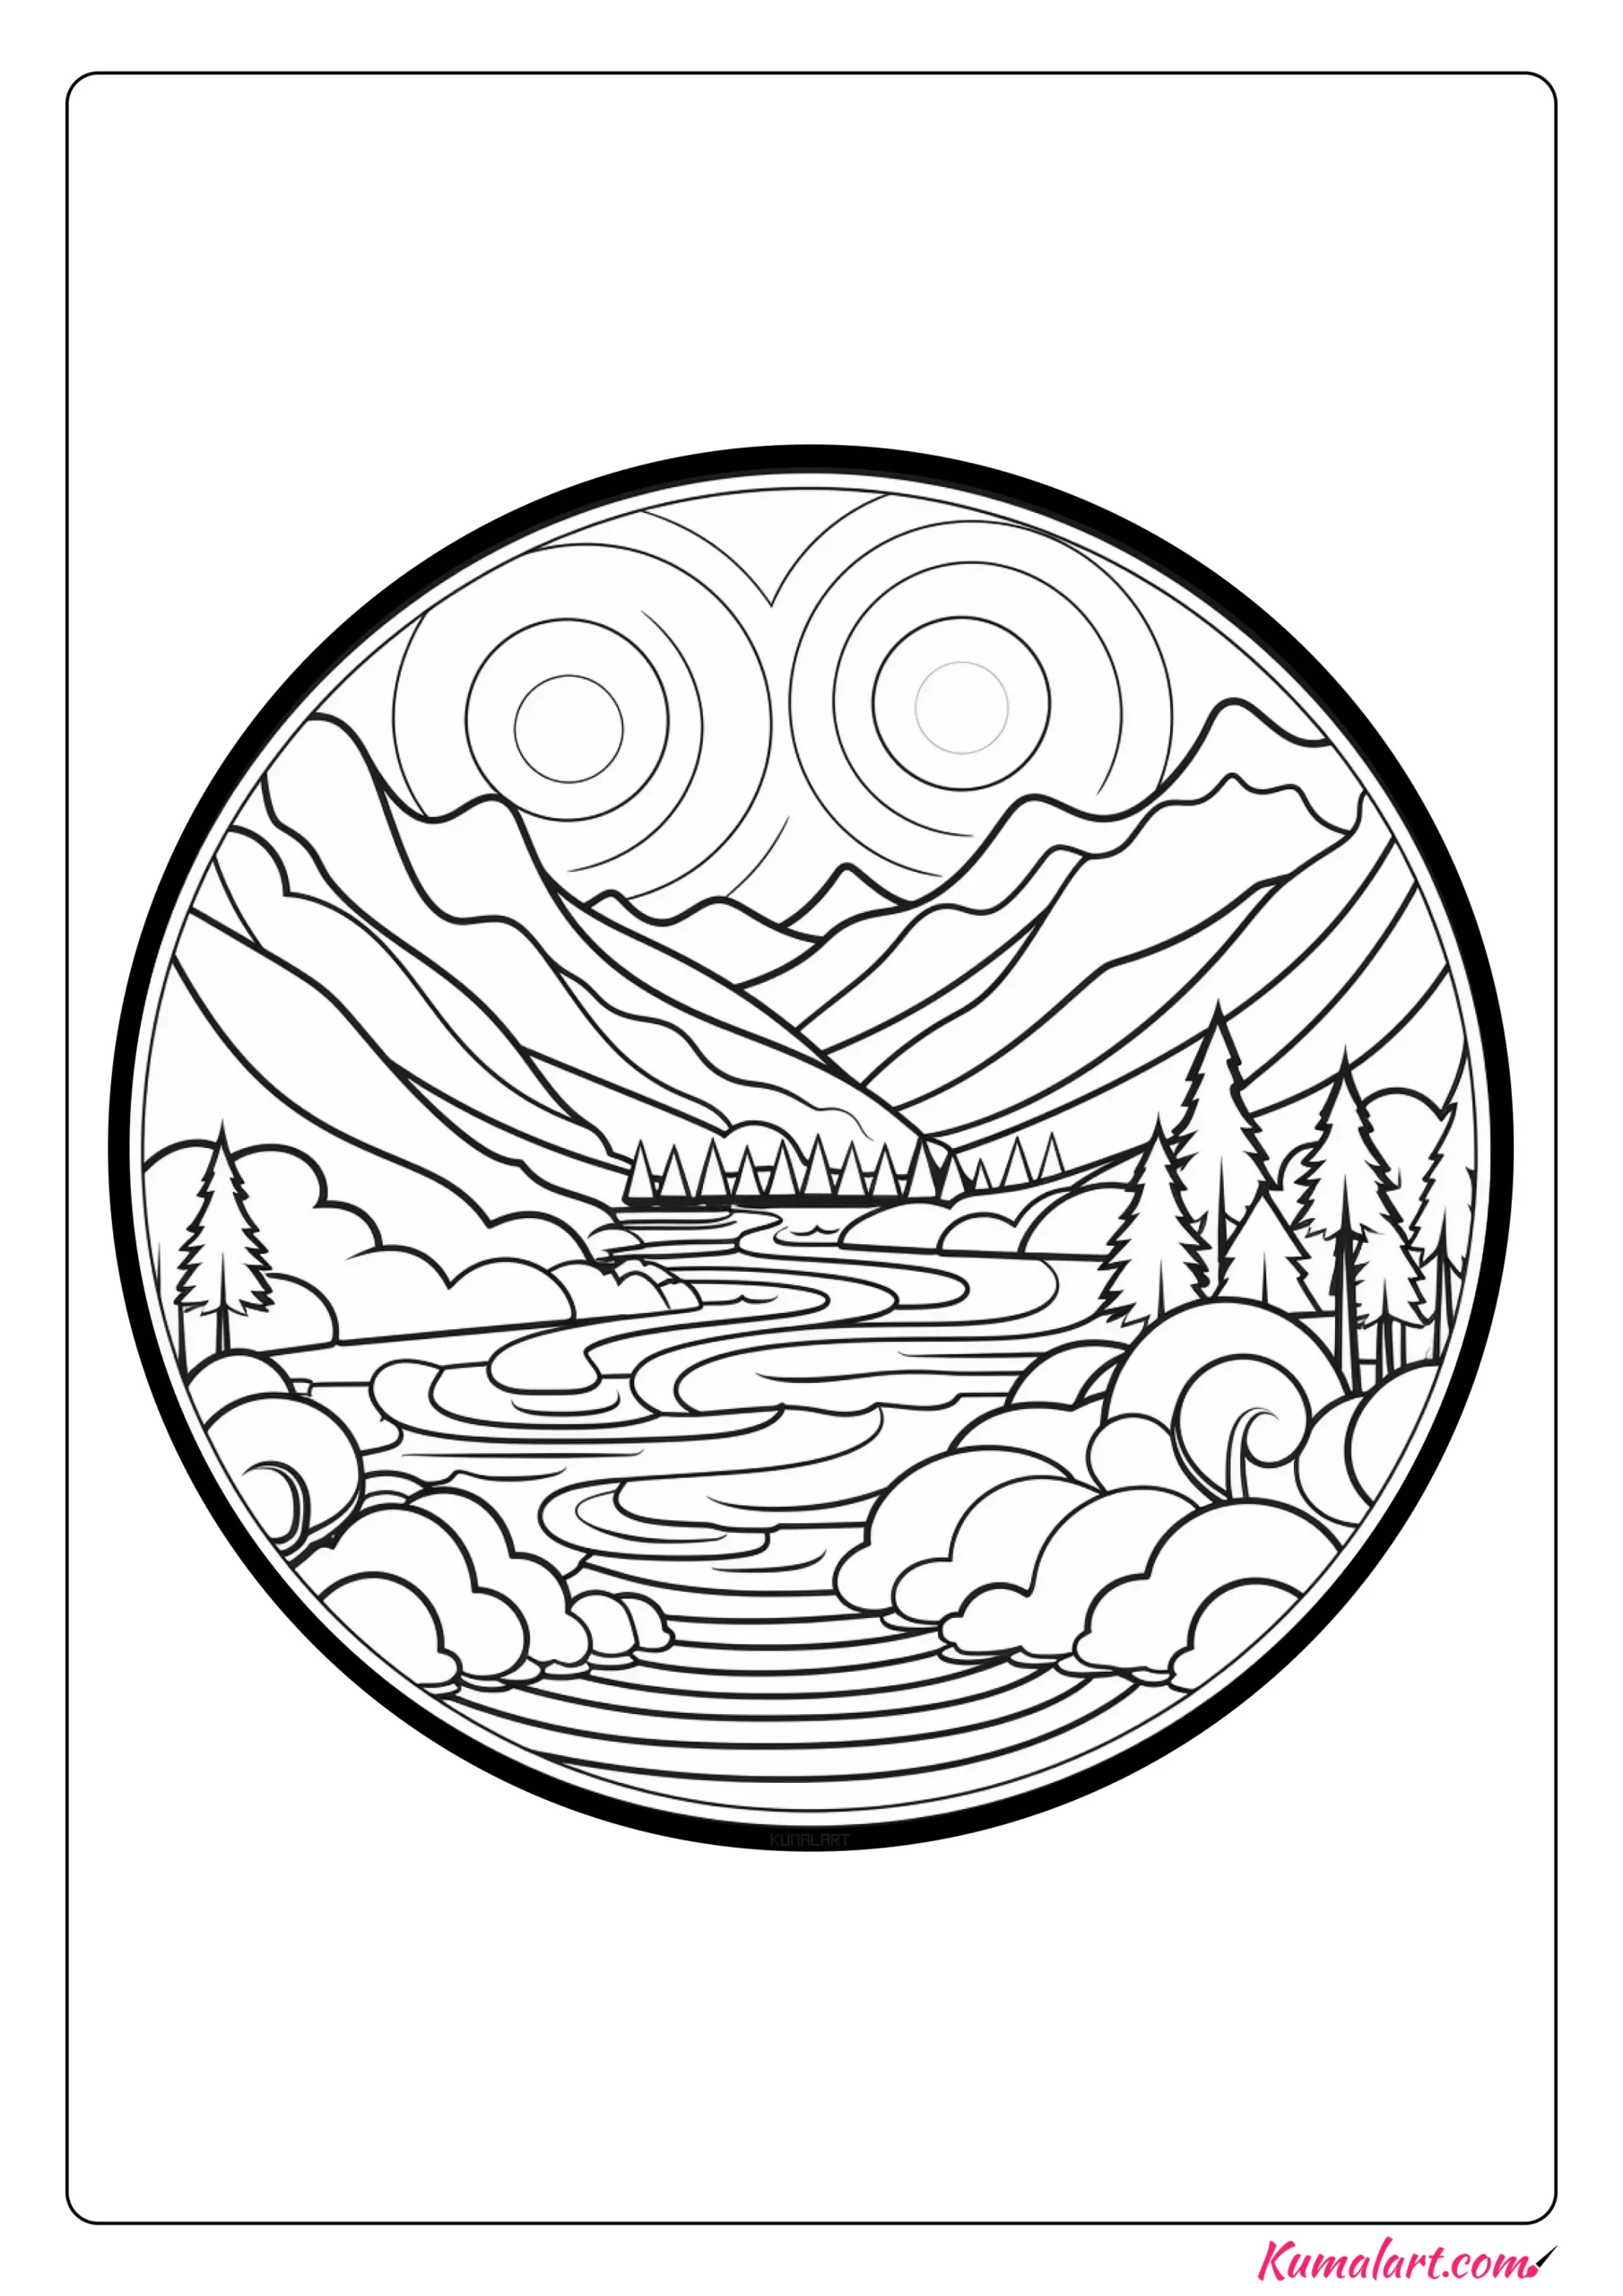 Abstract River Mandala Coloring Page